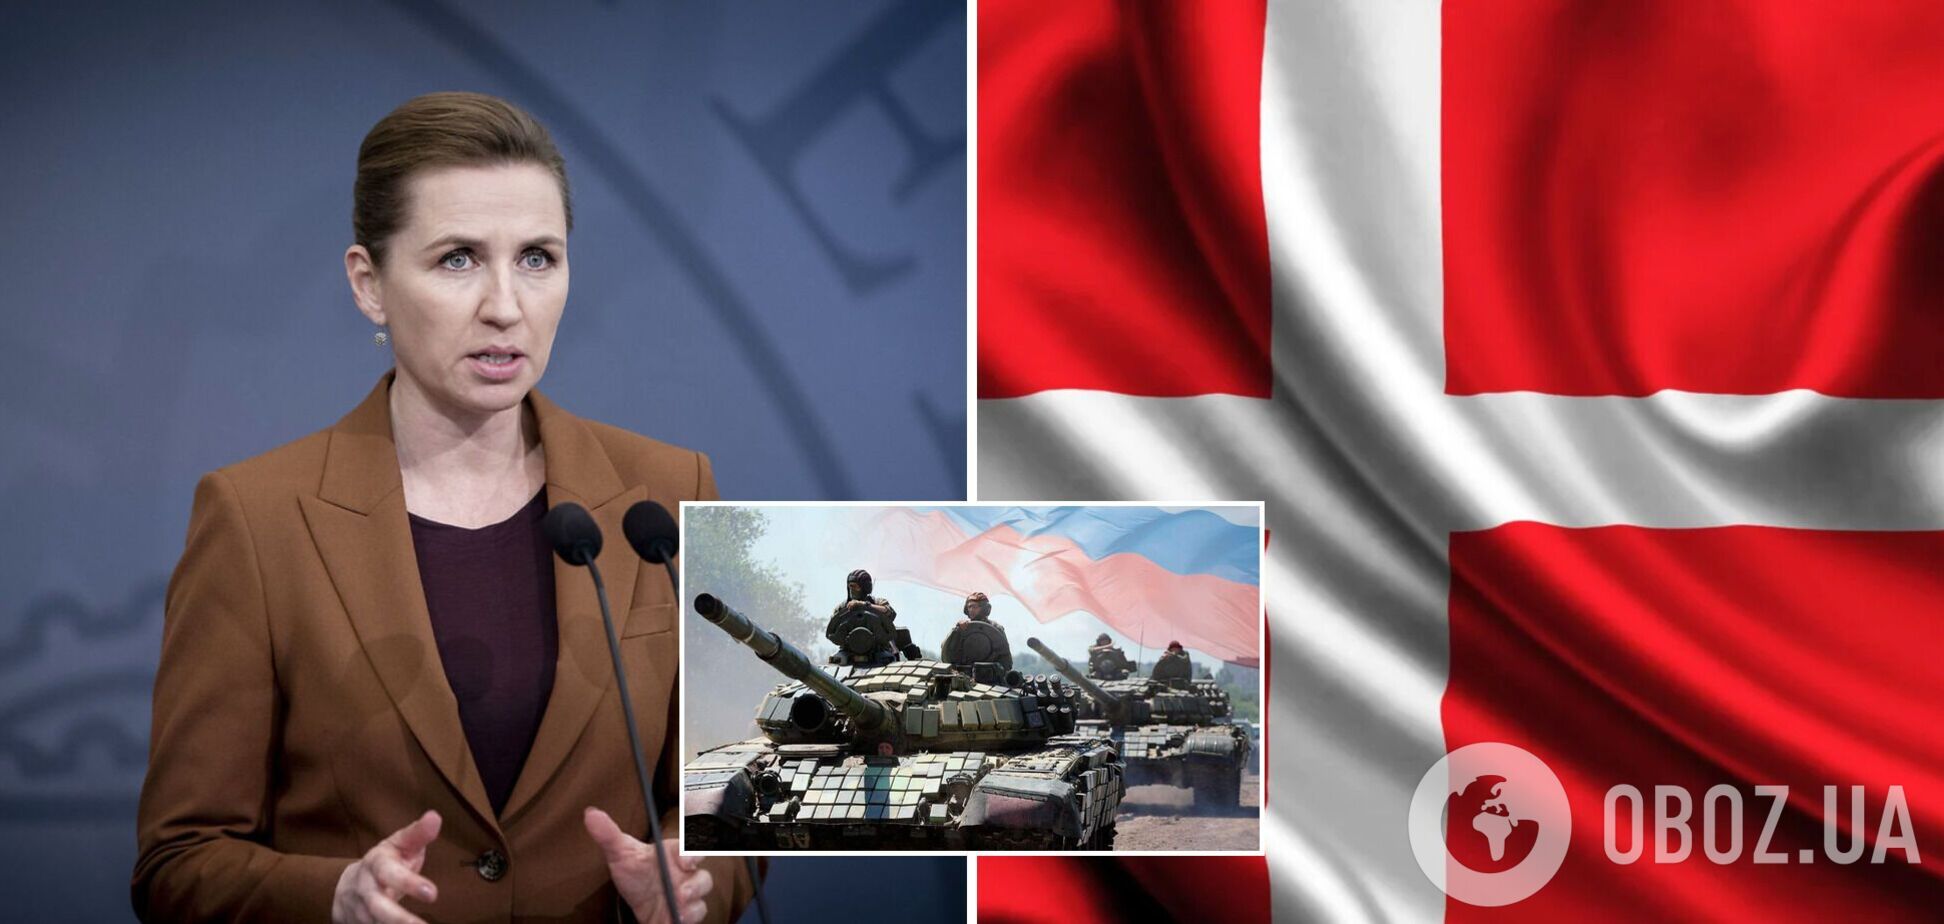 Дания планирует передать Украине оружие и военную технику: все подробности